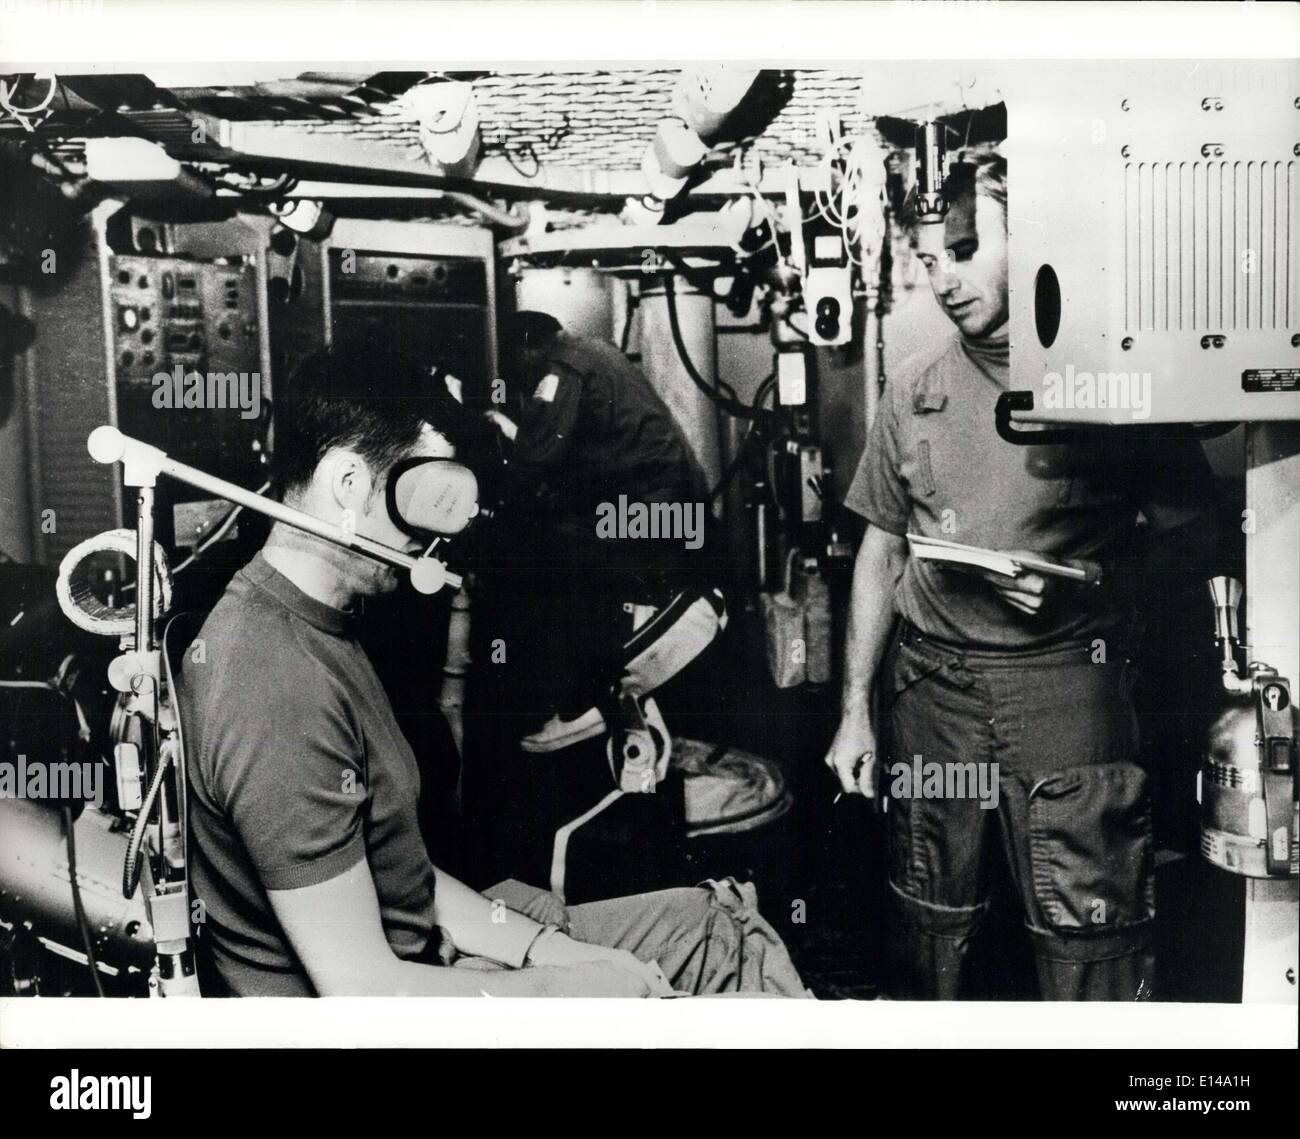 Le 17 avril 2012 - Le Skylab simulation : Scientist-Astronaut Joseph P. Kerwin, membre du premier équipage de l'premier mission Skylab, est perçu à l'essai sur l'expérience de la fonction vestibulaire, M131, au cours de la journée 11 simulation des jours sélectionnés de la mission qui est prévue pour le lancement au printemps de 1973. La simulation a été menée dans des formateurs et des simulateurs dans la simulation de mission et de formation des astronautes du Manned Spacecraft Center Banque D'Images